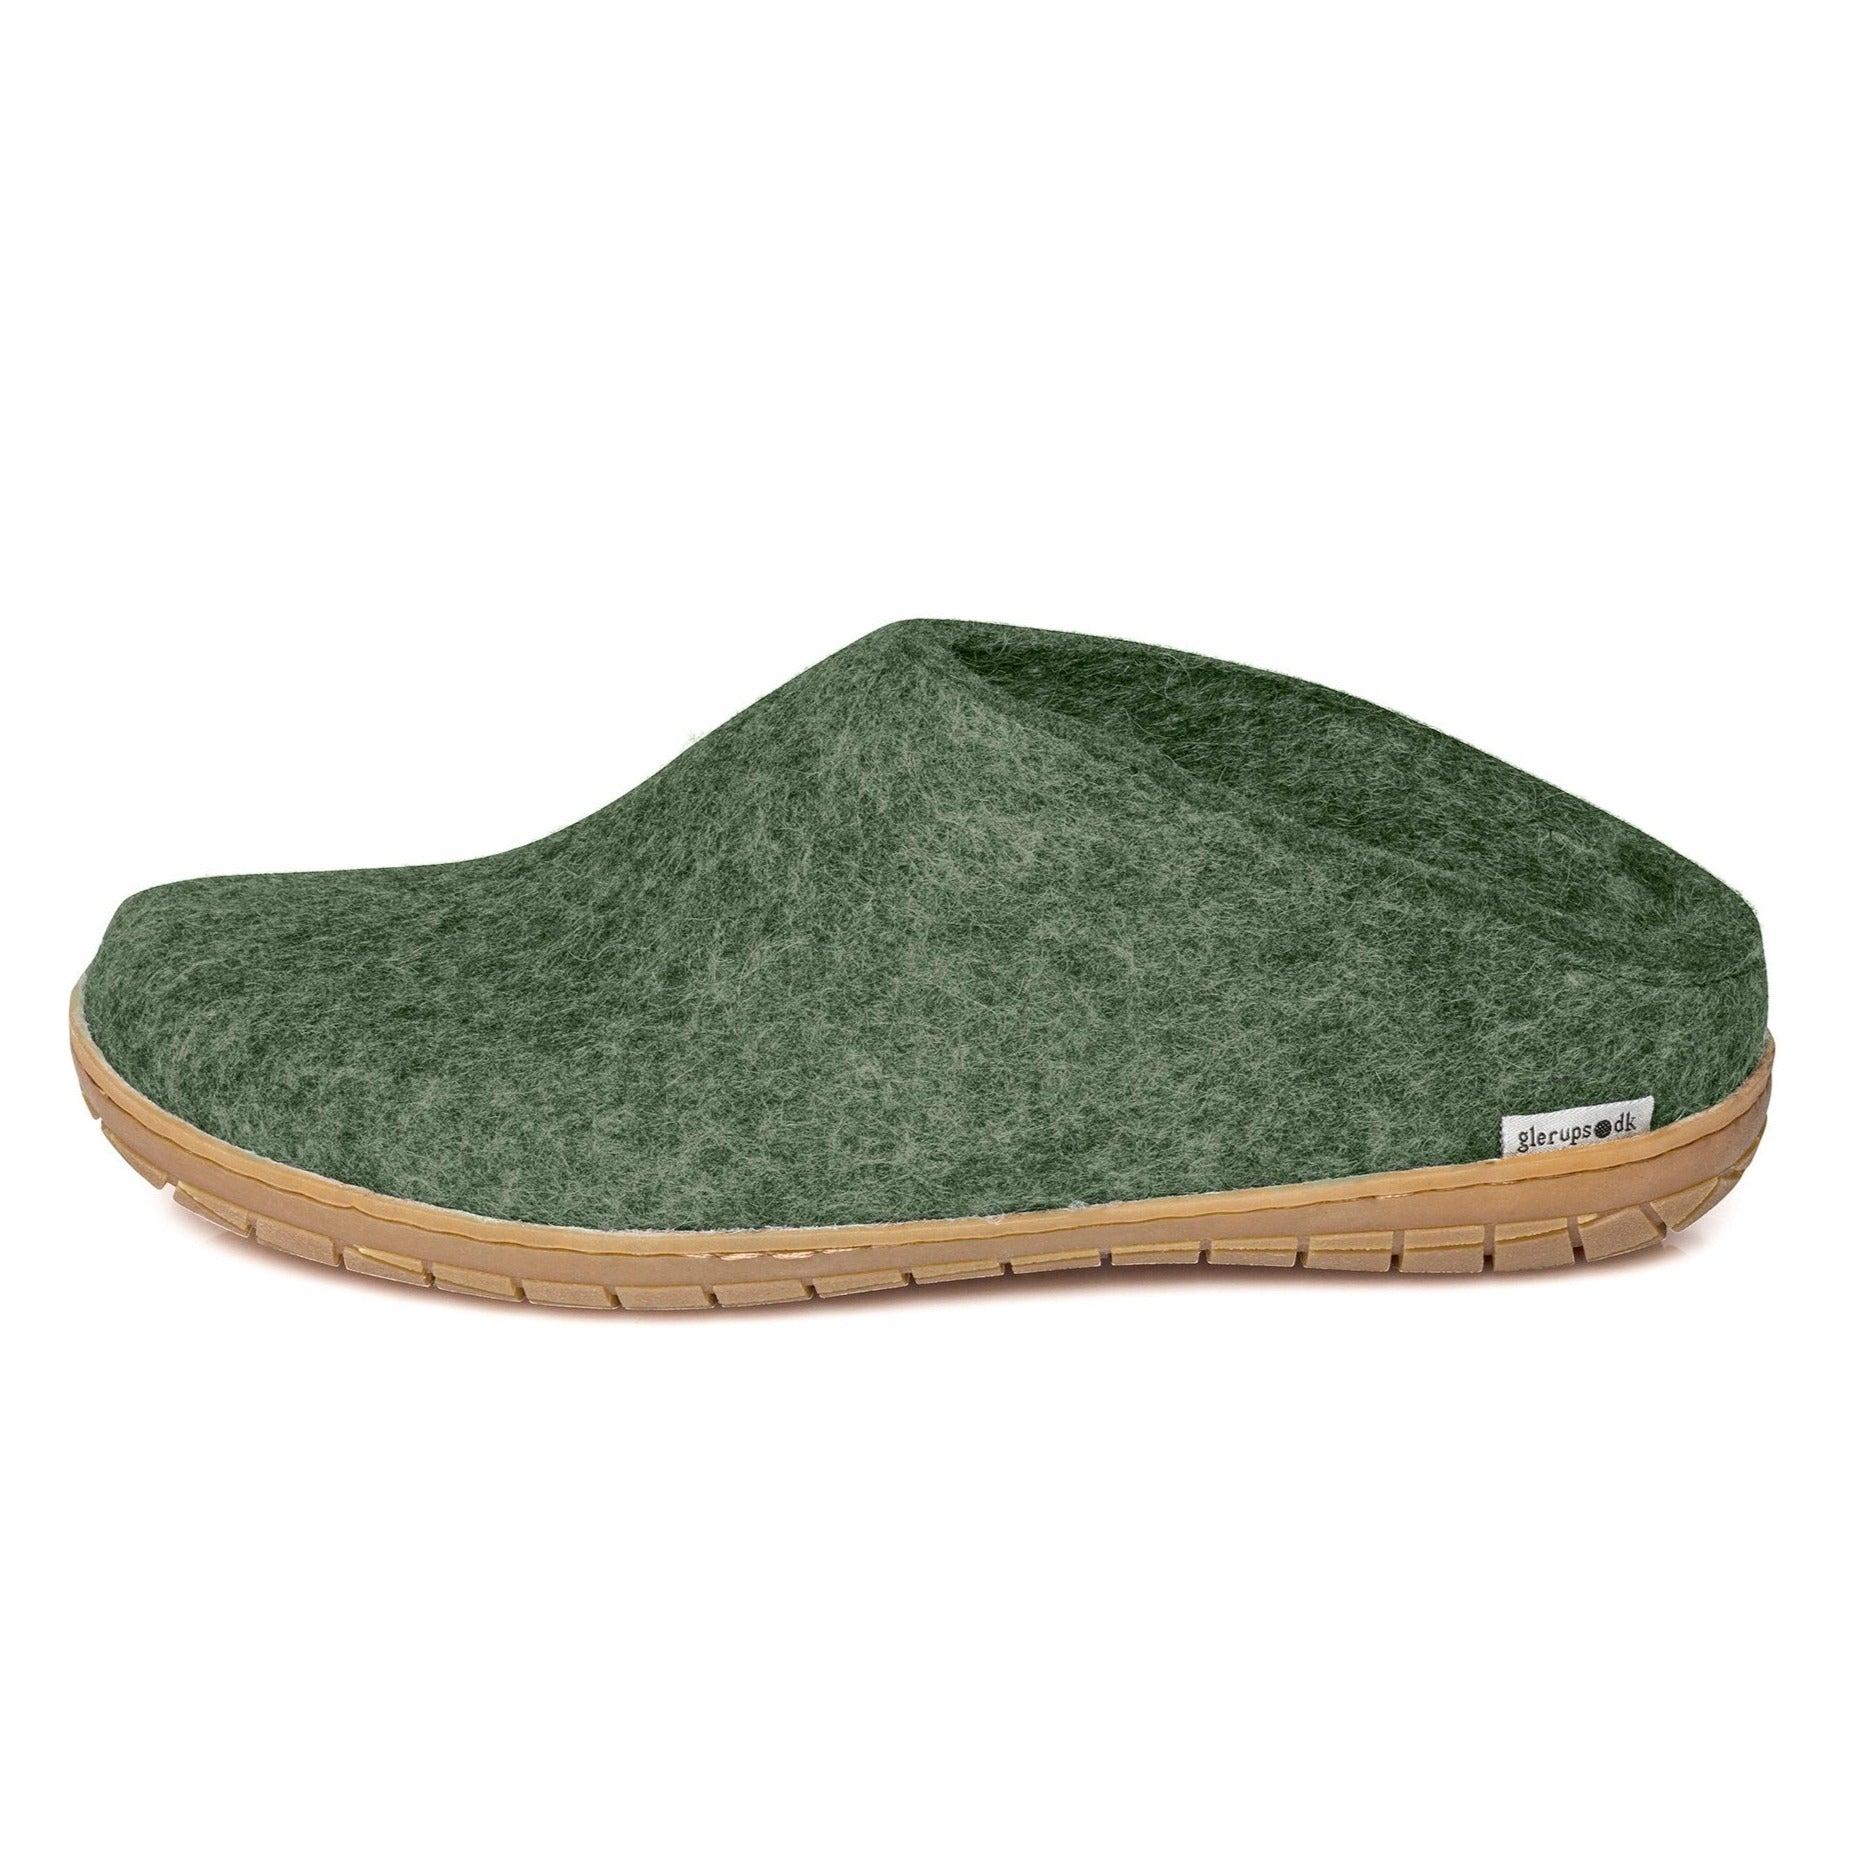 Glerups slipper slip-on rubber sole forest green